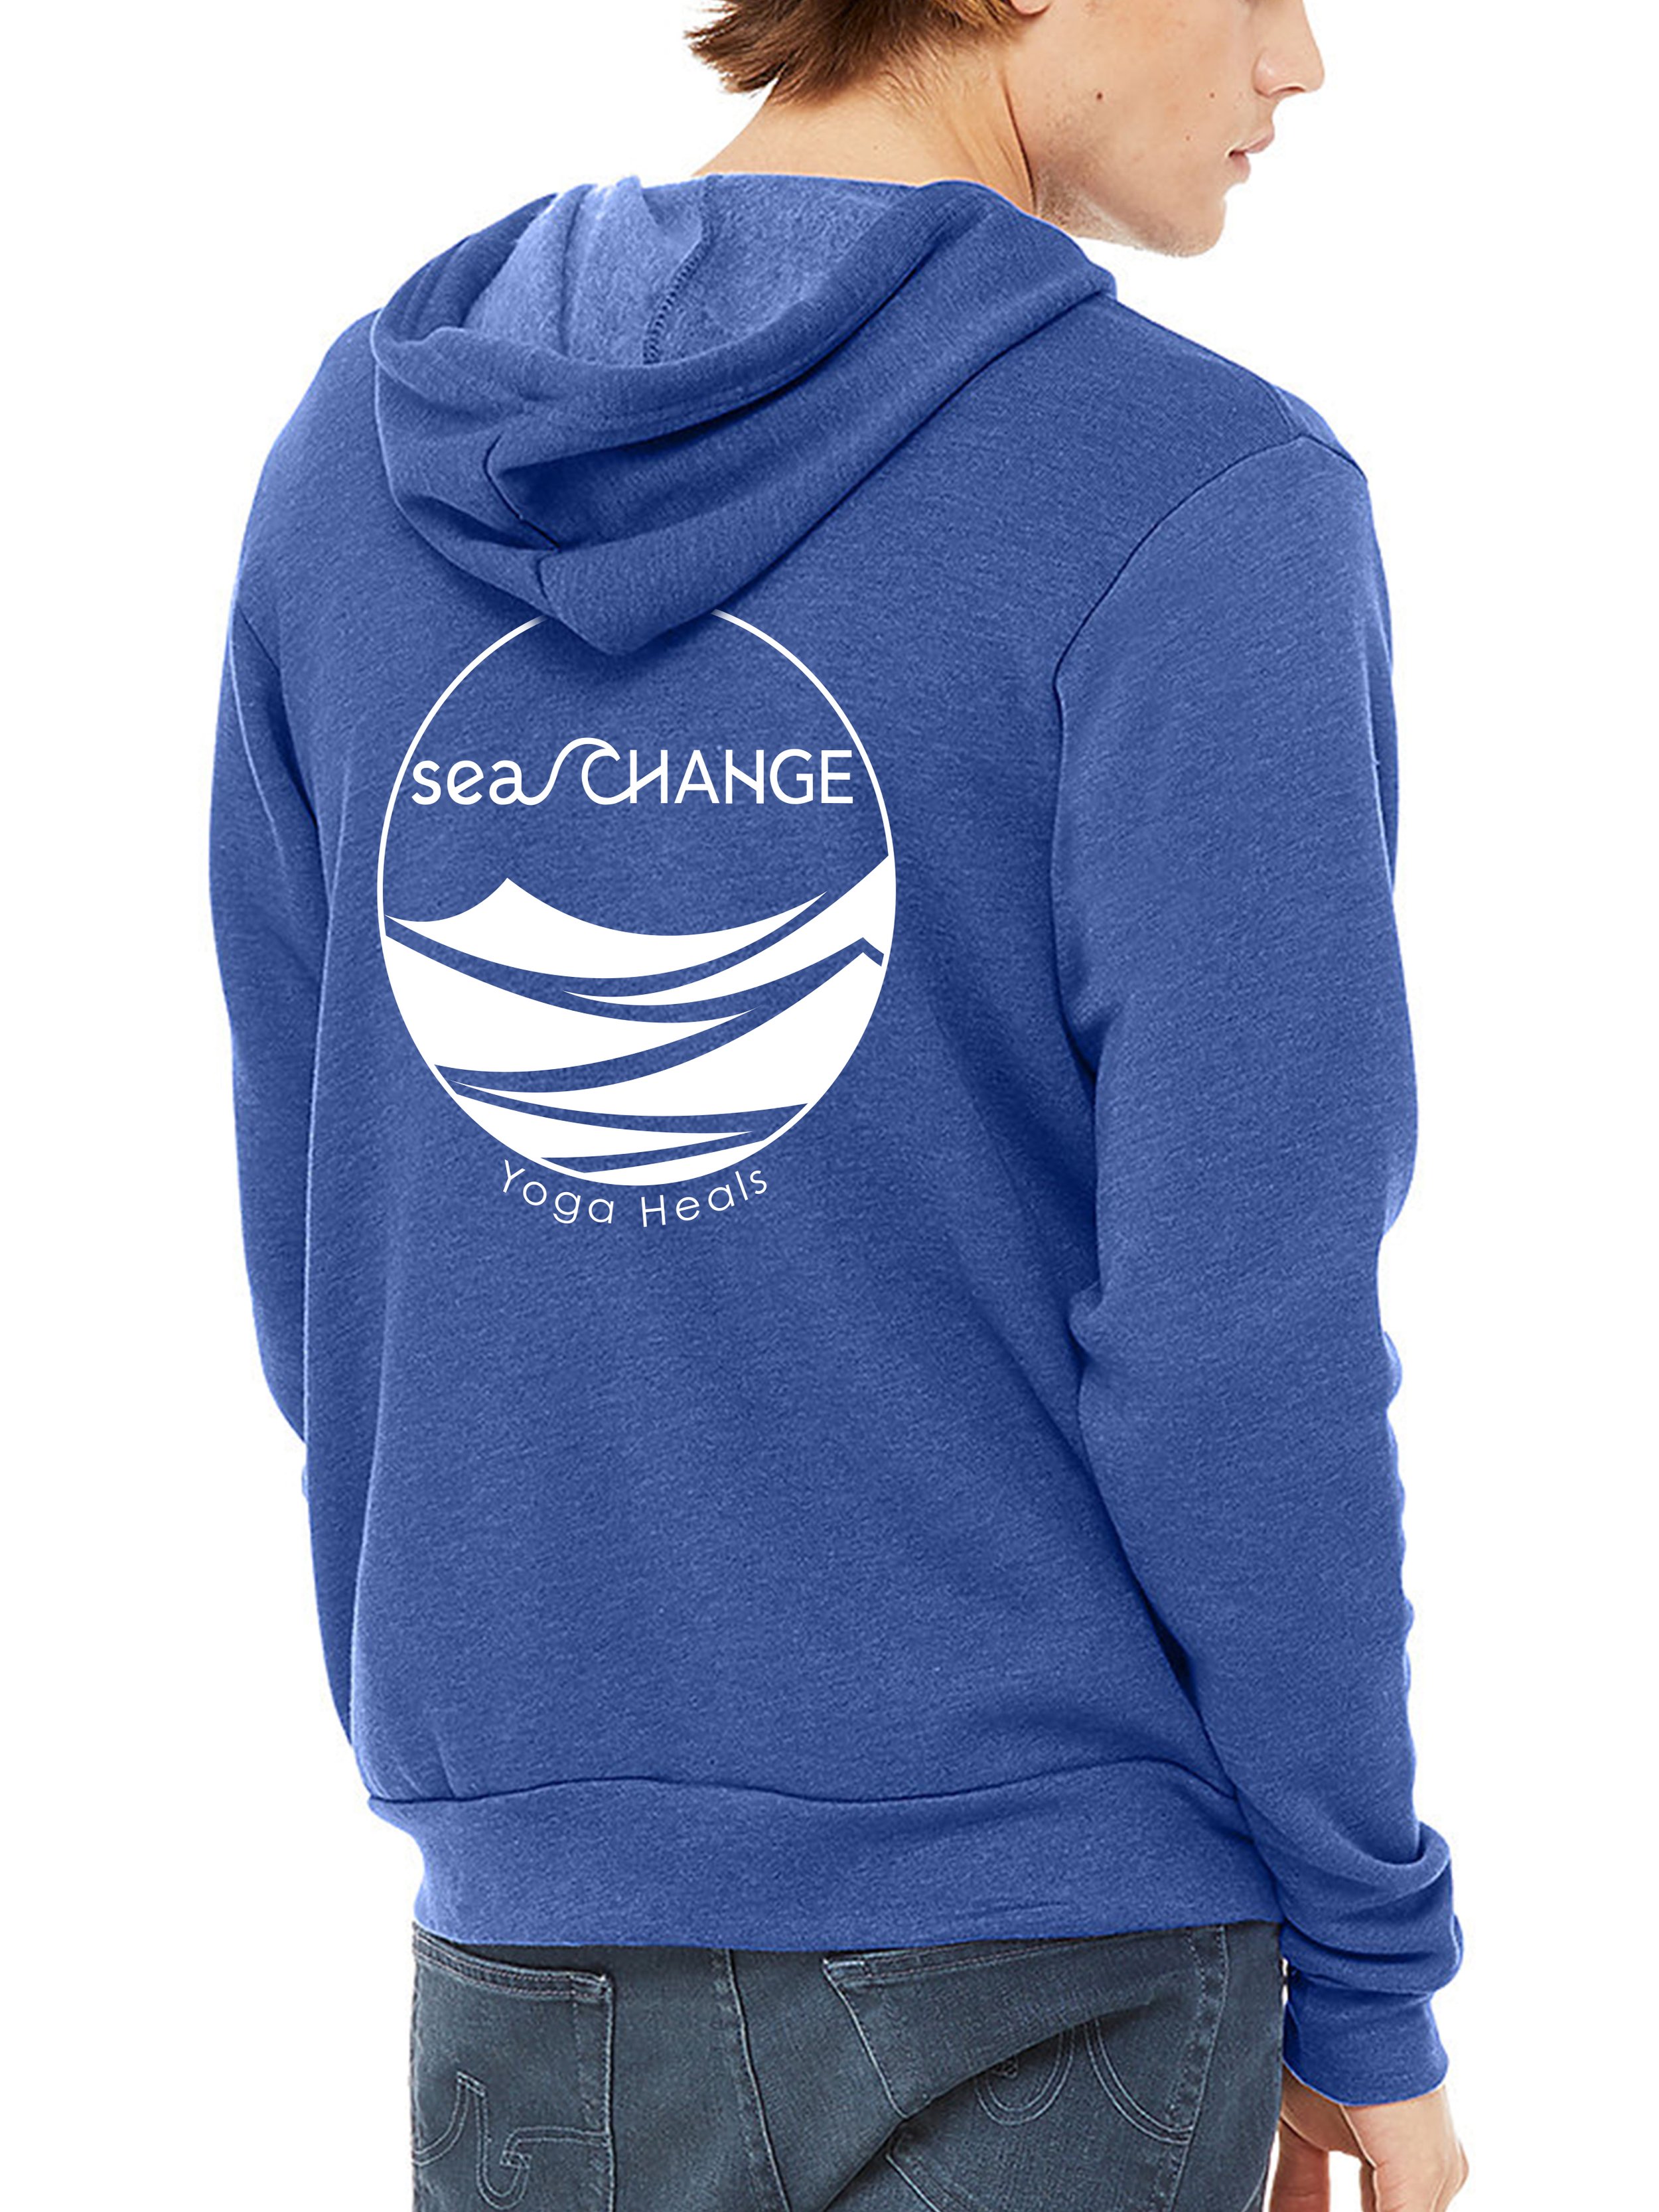 Sea Change Yoga Zip Up Hoodie - Blue — Sea Change Yoga